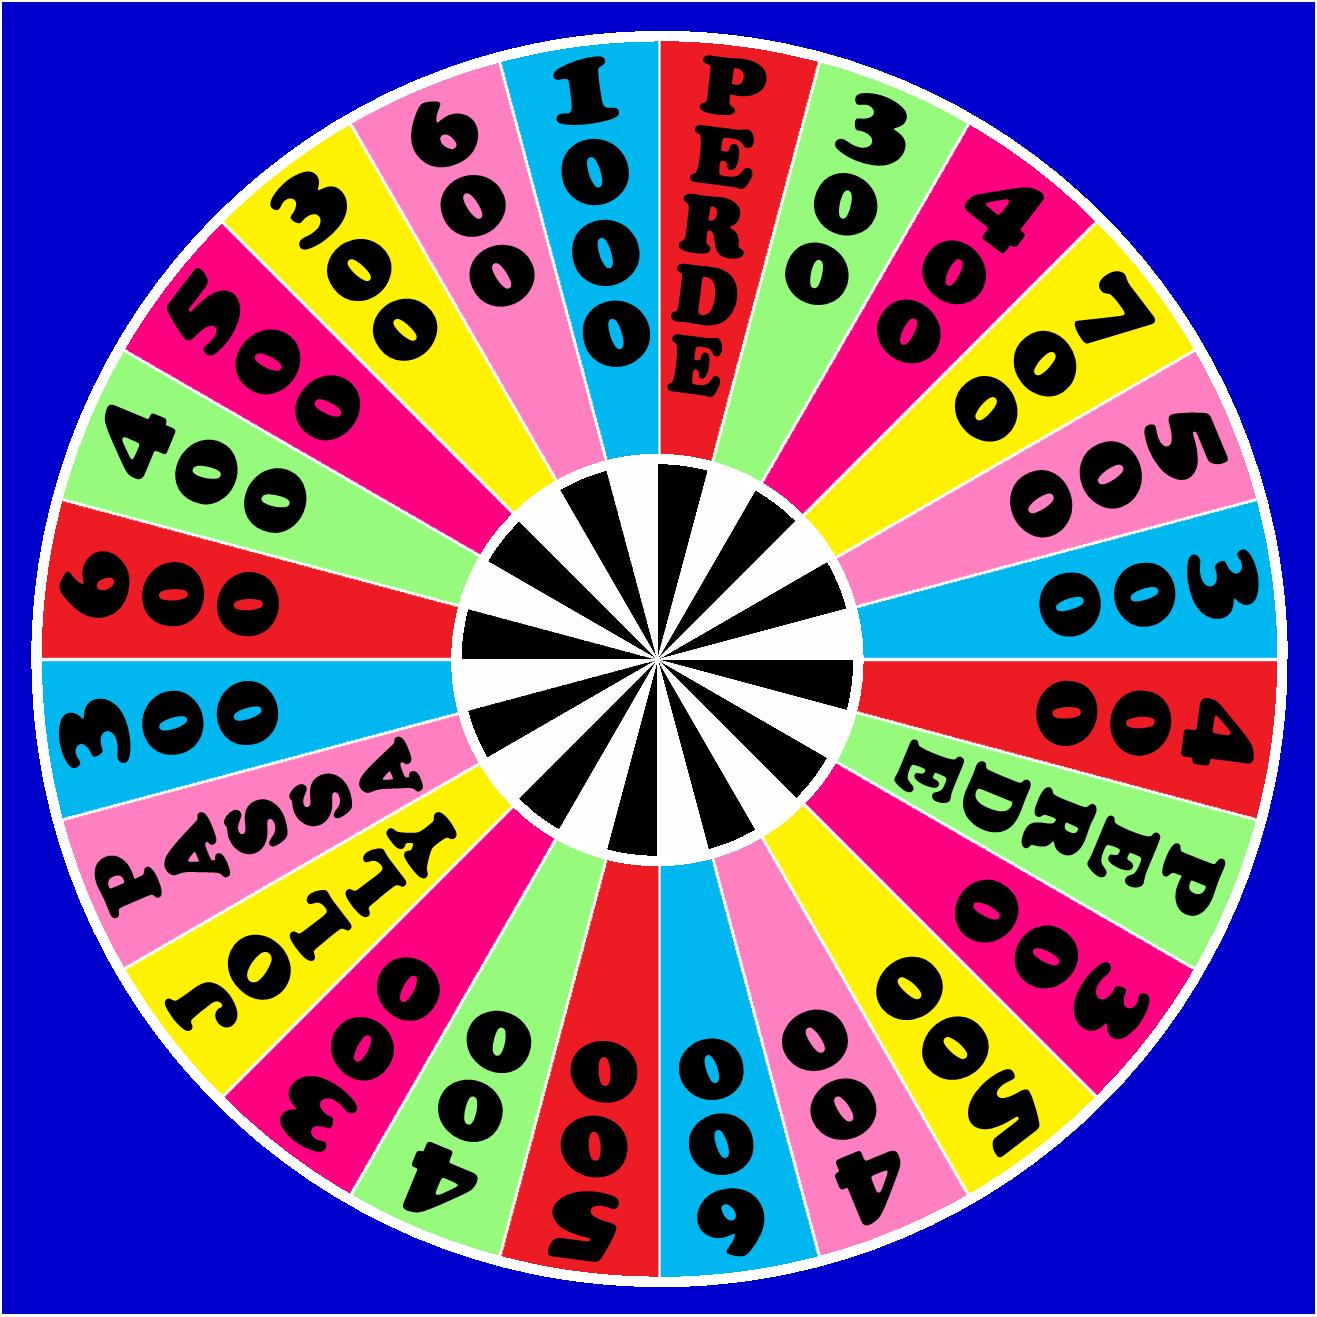 La Ruota Della Fortuna Board Game Spinner by germanname